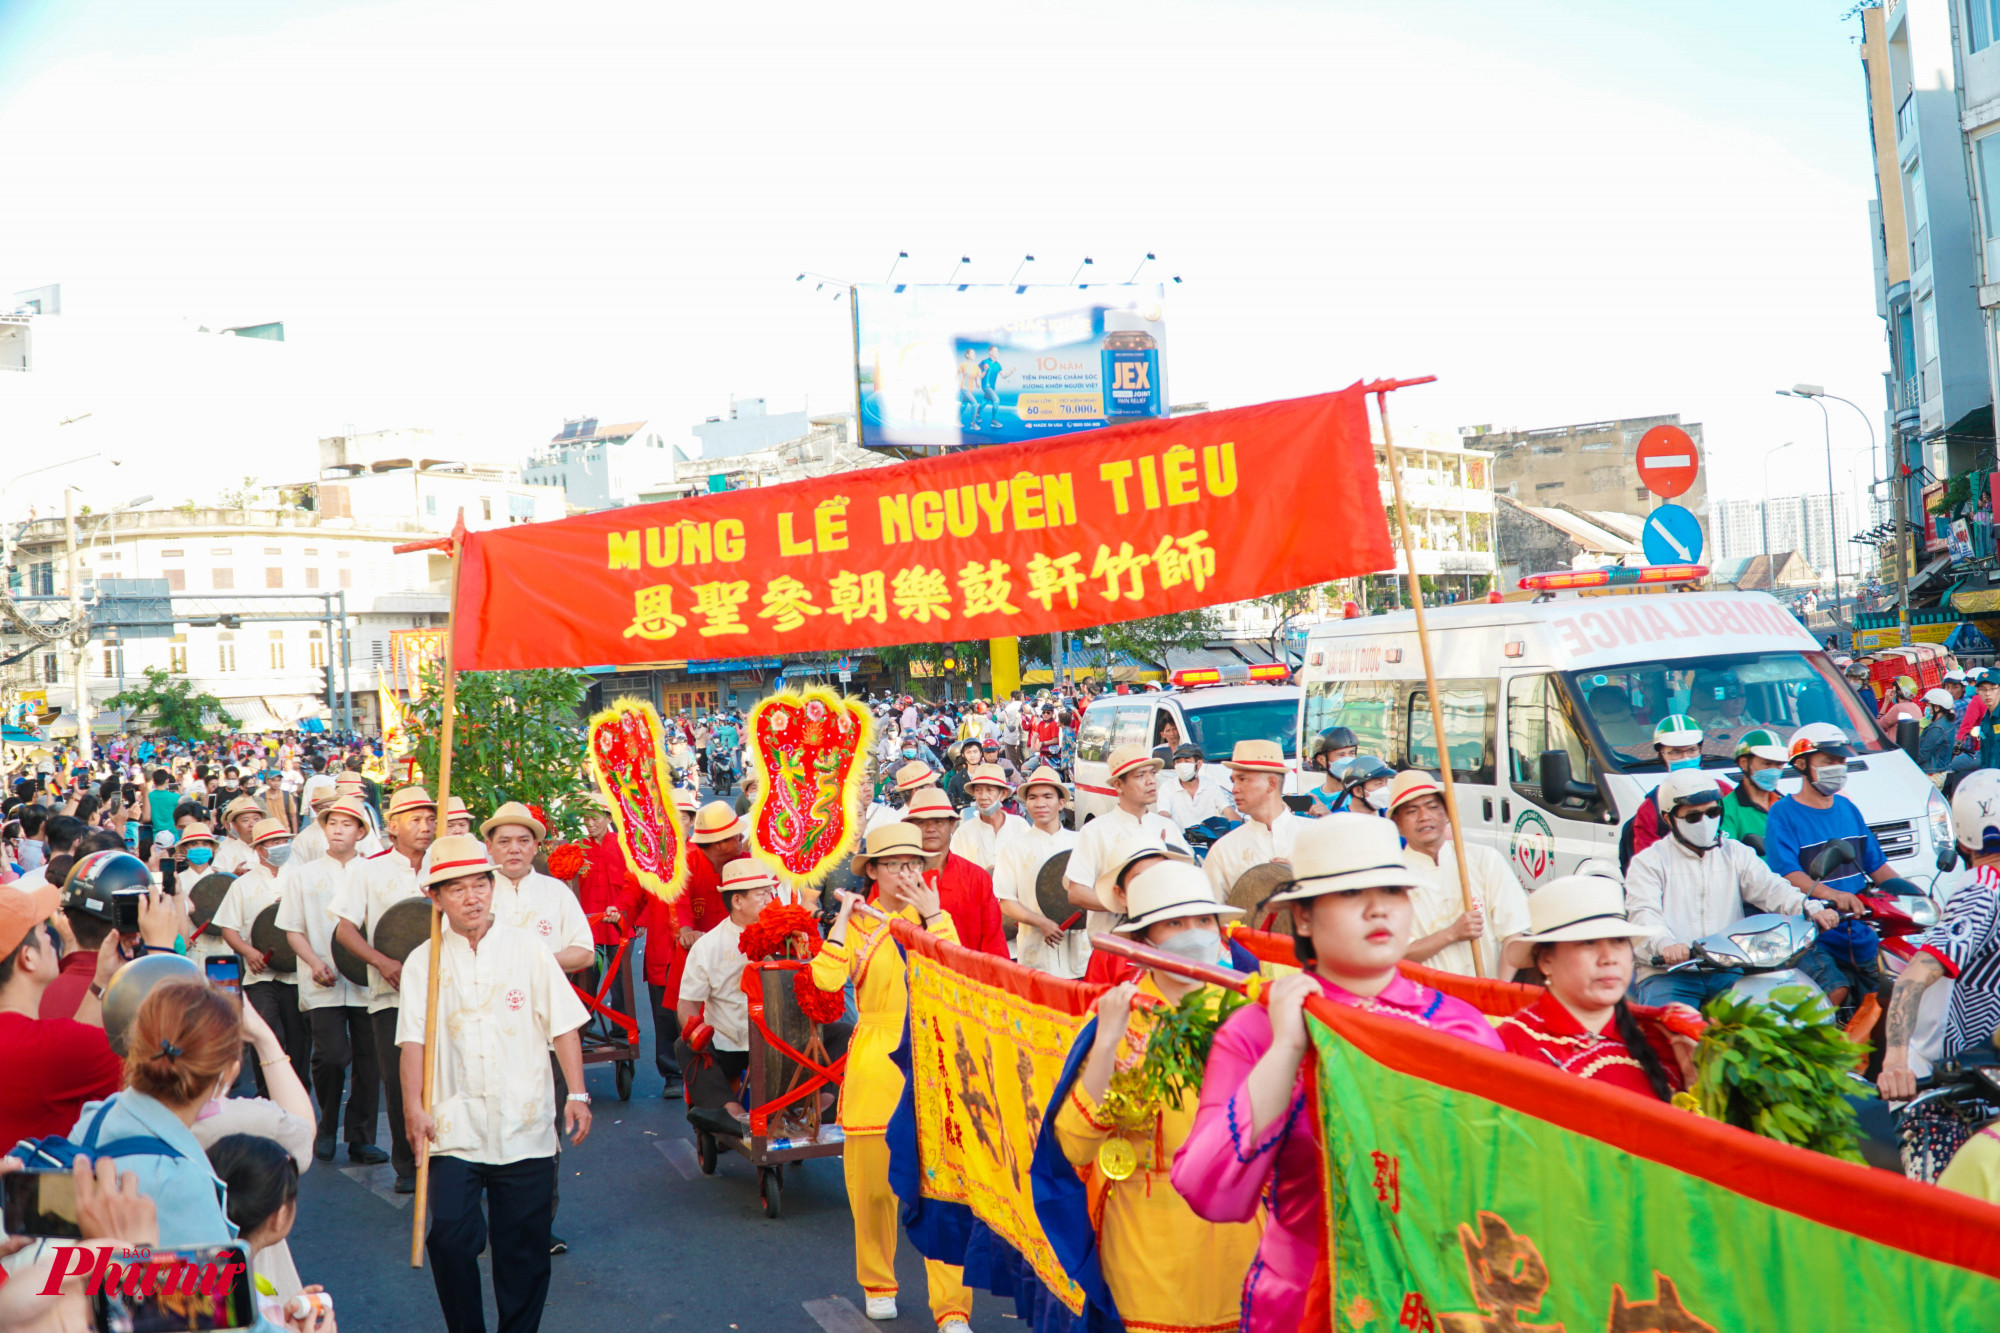 Lễ hội Nguyên tiêu – Di sản văn hóa phi vật thể đã được đưa vào chuỗi sự kiện đón tết Cổ truyền của dân tộc và là một trong 19 sự kiện văn hóa, nghệ thuật, lễ hội tiêu biểu tại Thành phố Hồ Chí Minh.